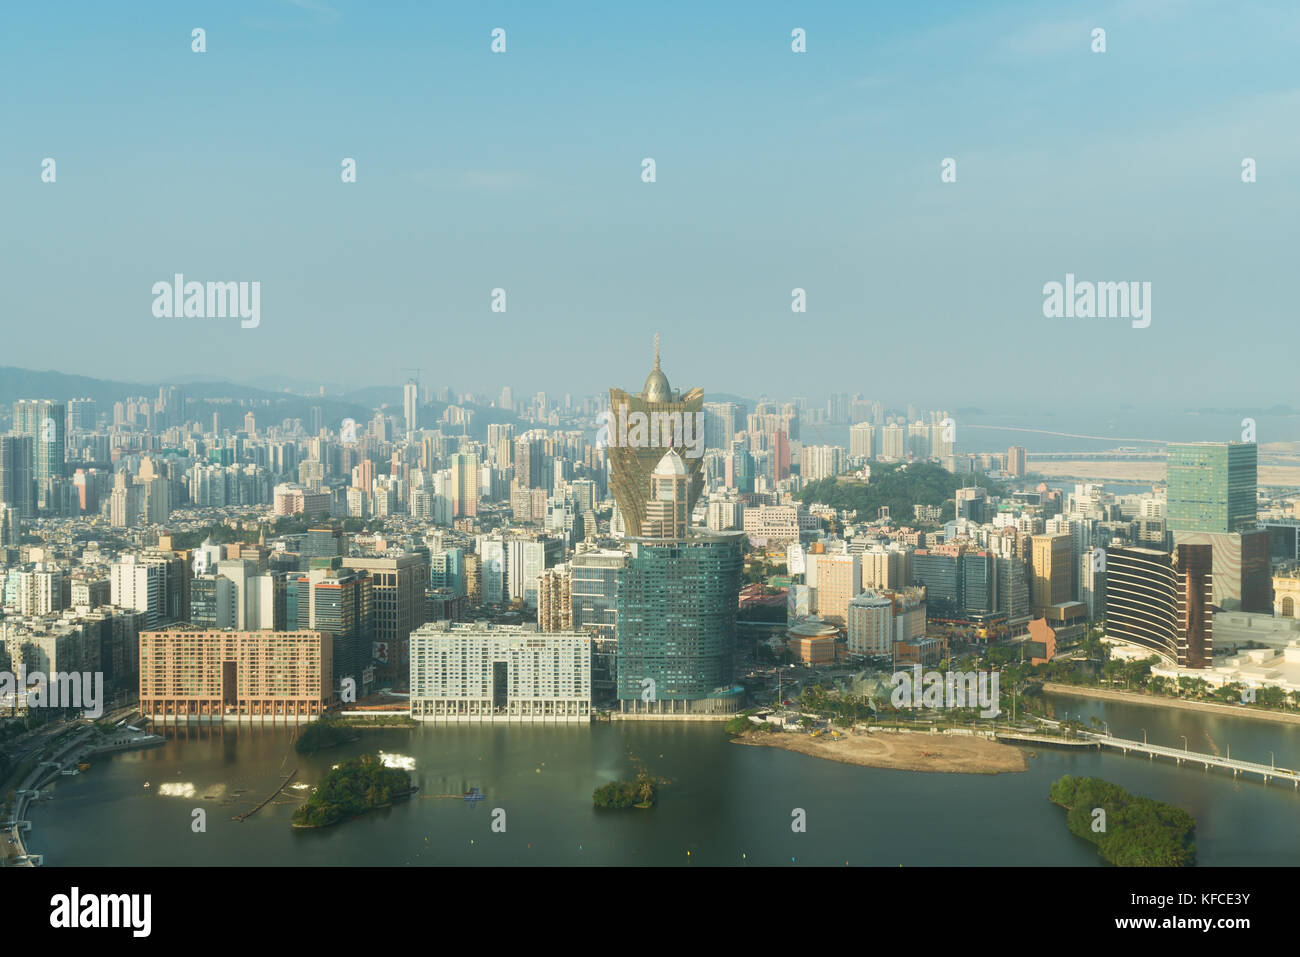 Image de Macao (Macao), Chine. gratte-ciel et des capacités au centre-ville de casino à Macao (Macao). Banque D'Images